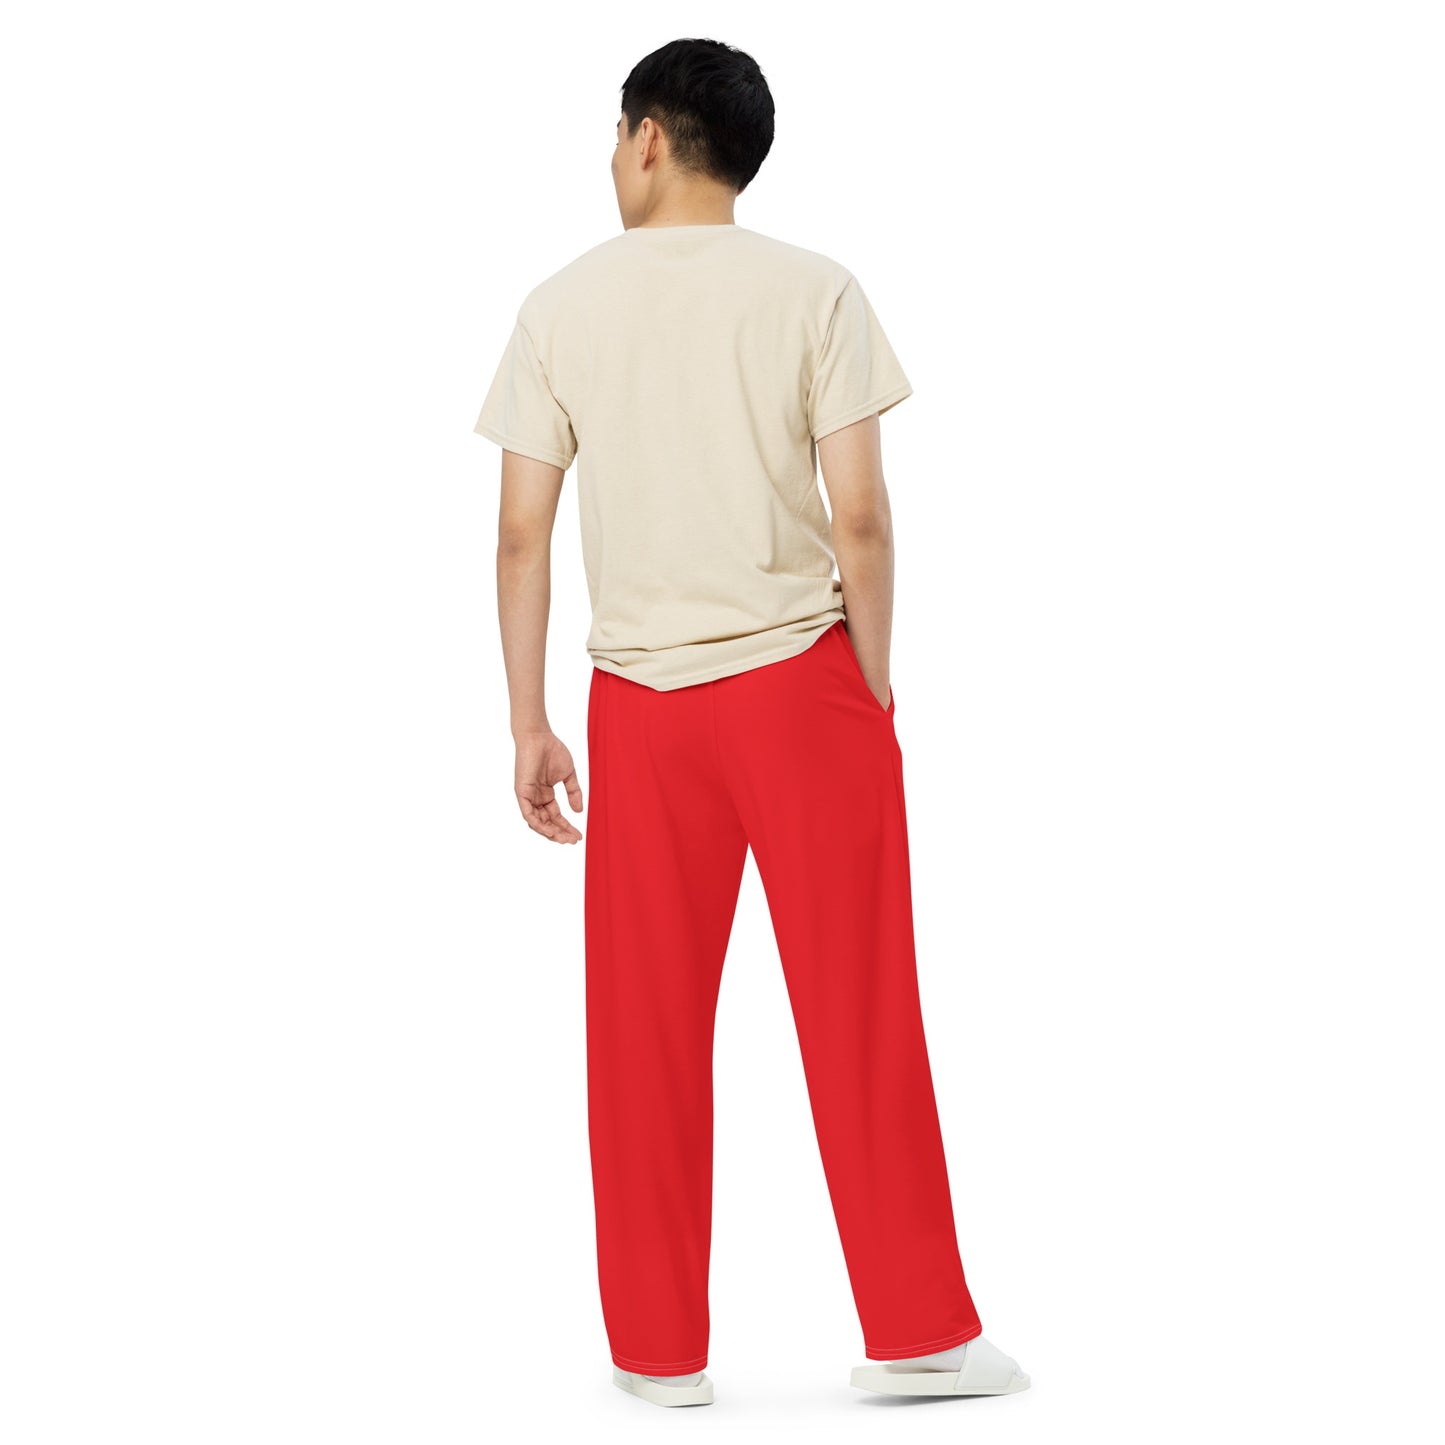 GymWidowz unisex wide-leg pants - Red